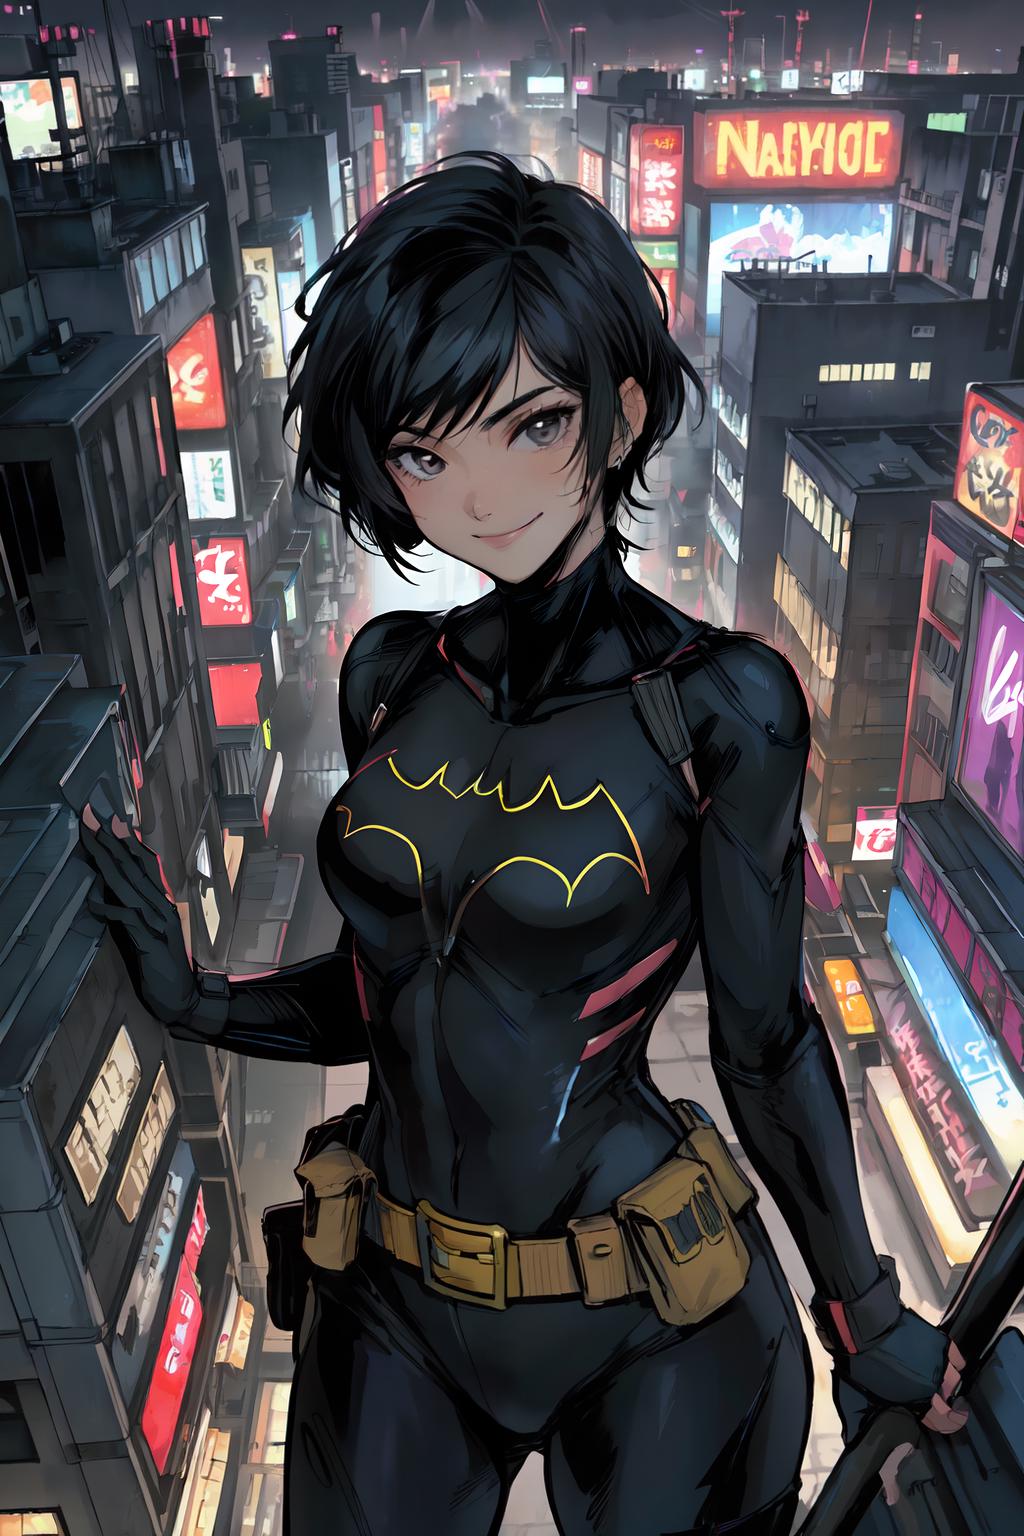 Batgirl | Cassandra Cain image by kokurine